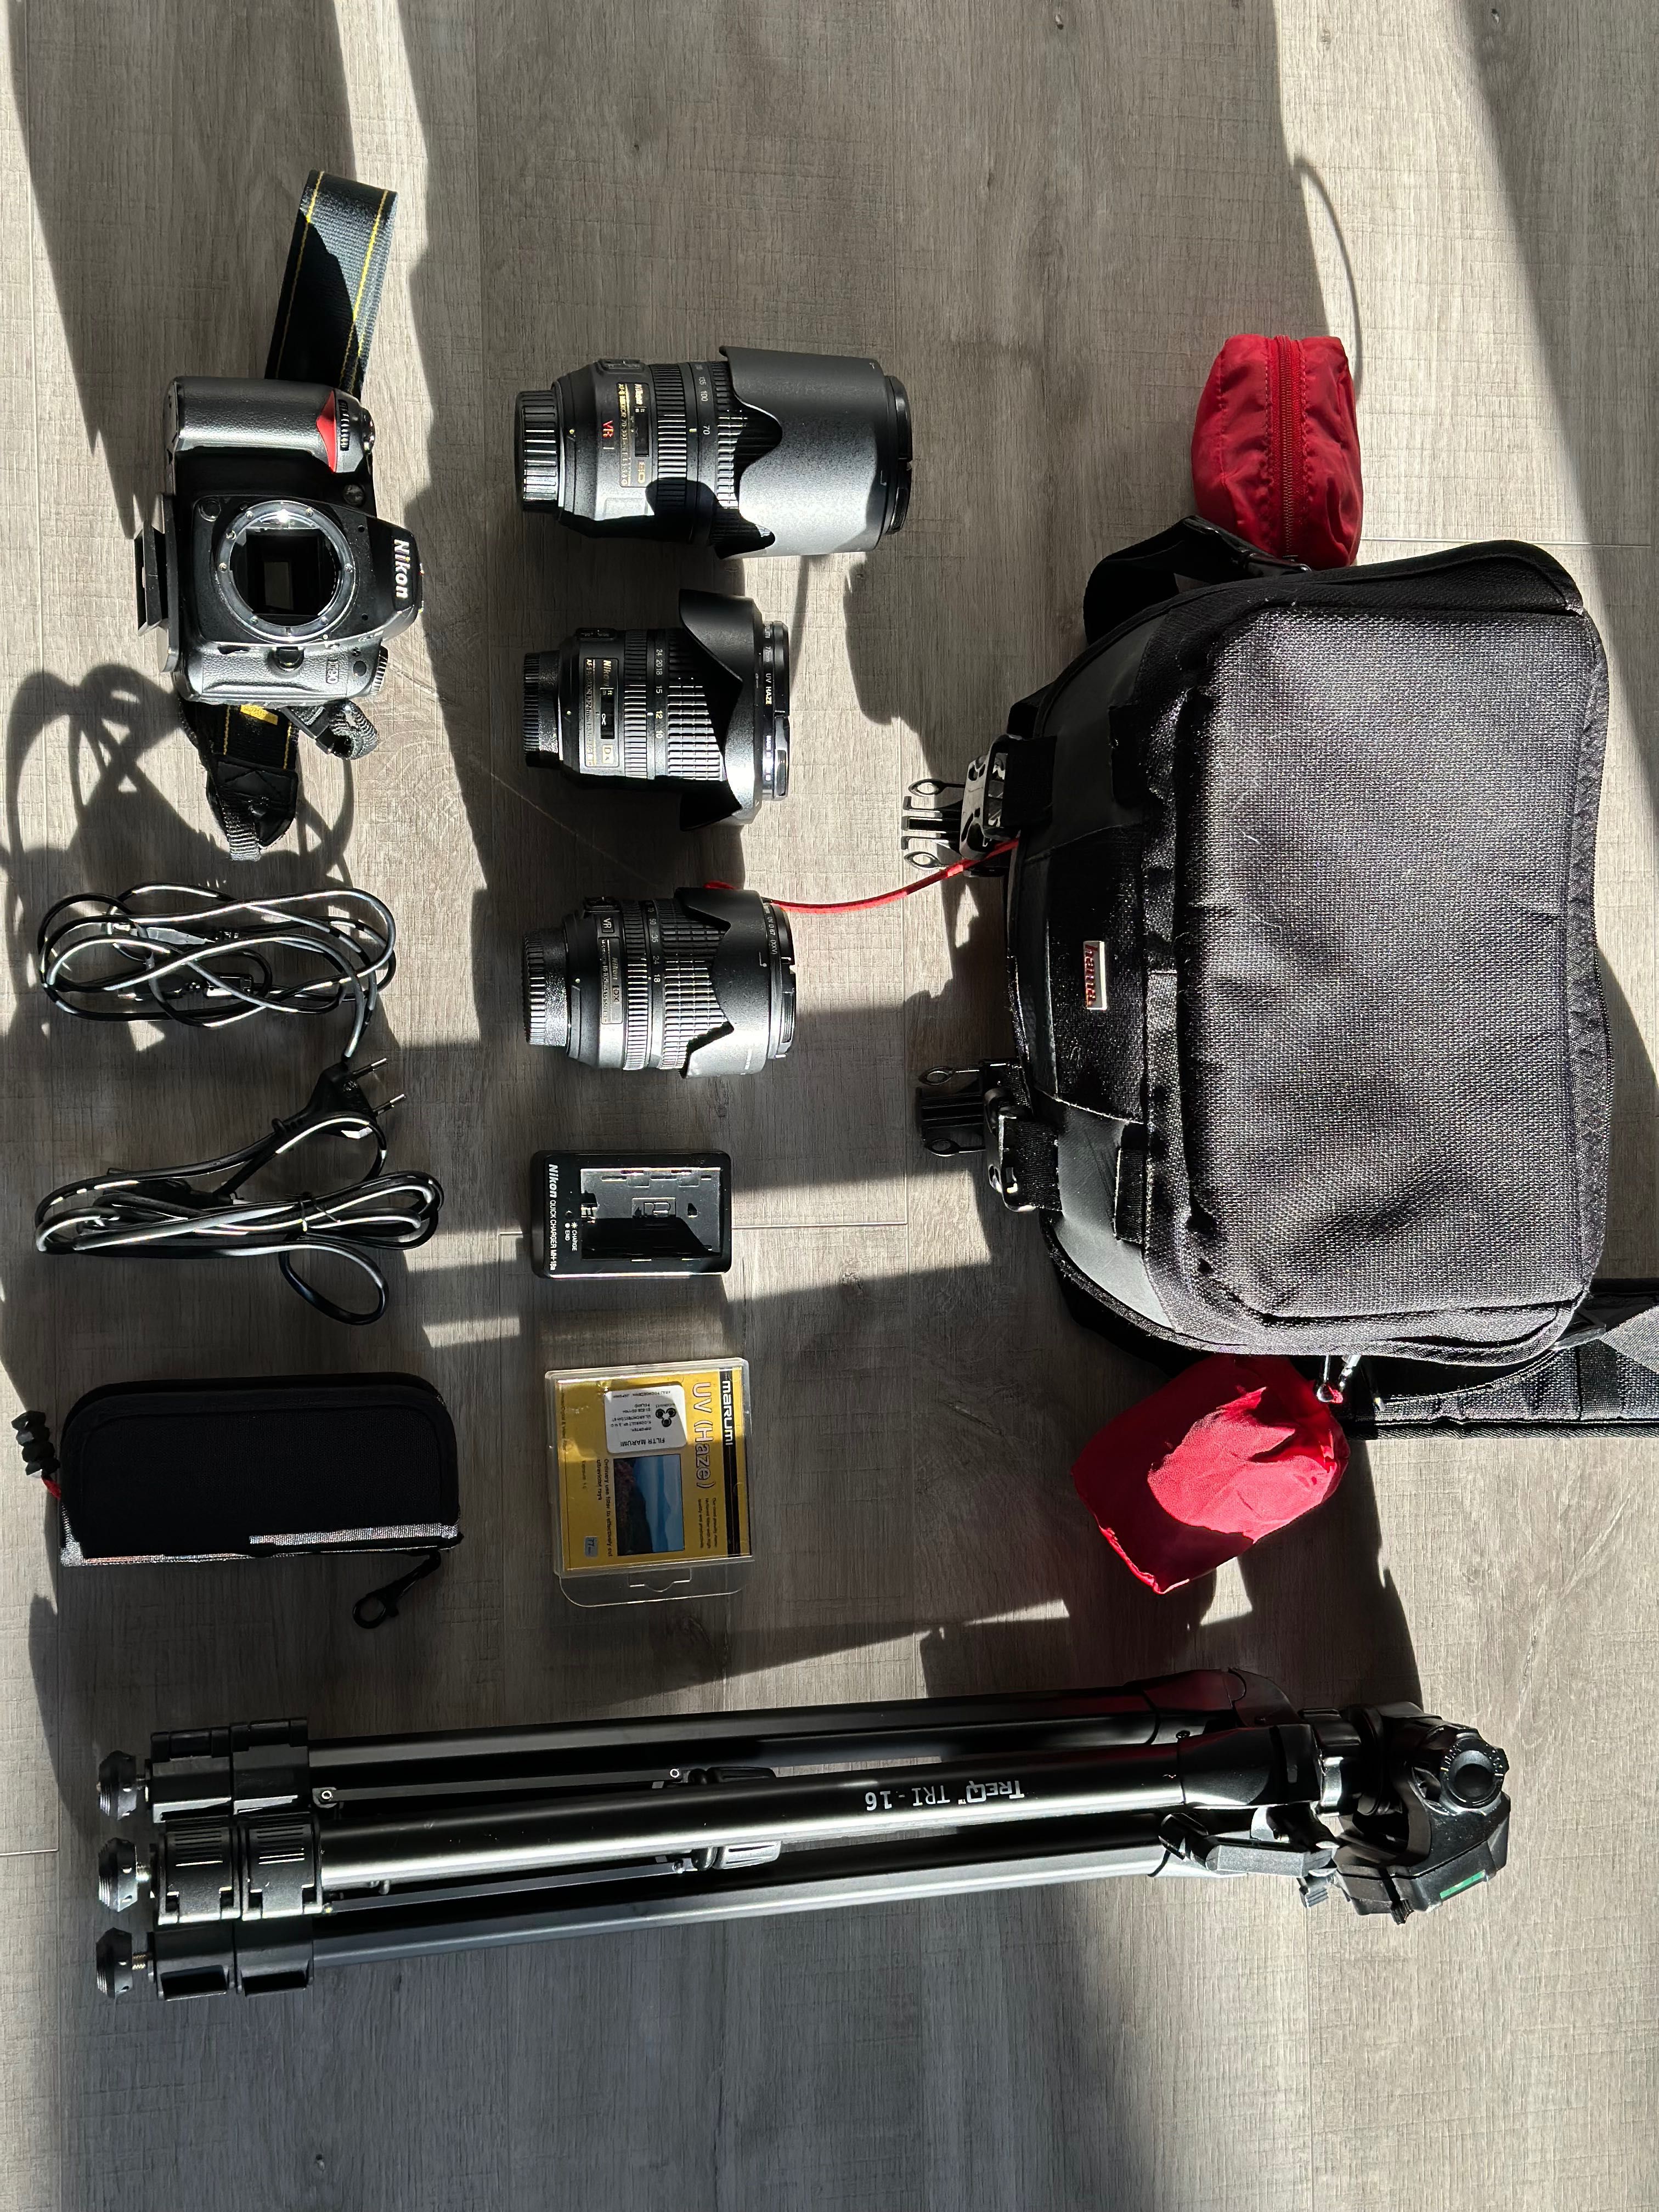 Sprzęt fotograficzny Nikon D90, lustrzanka w zestawie z obiektywami